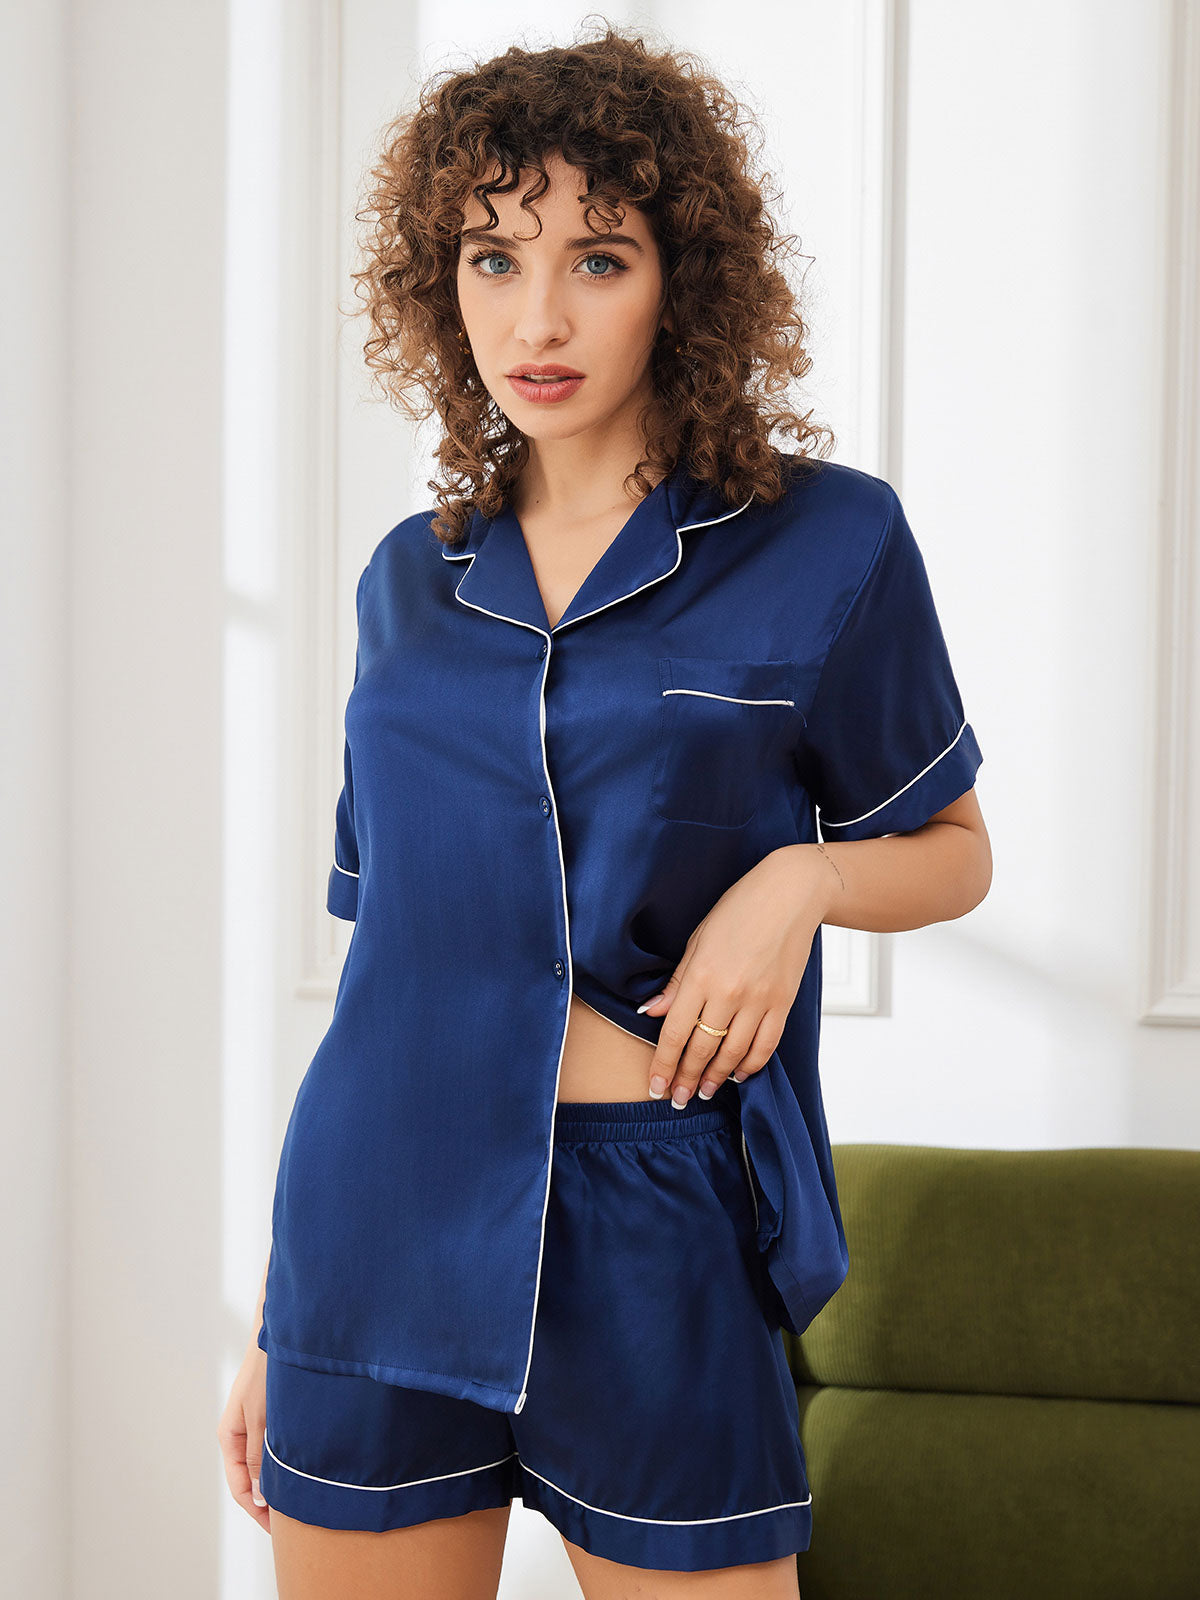 Pure Silk Pajamas Short Set – CA-SILKSILKY